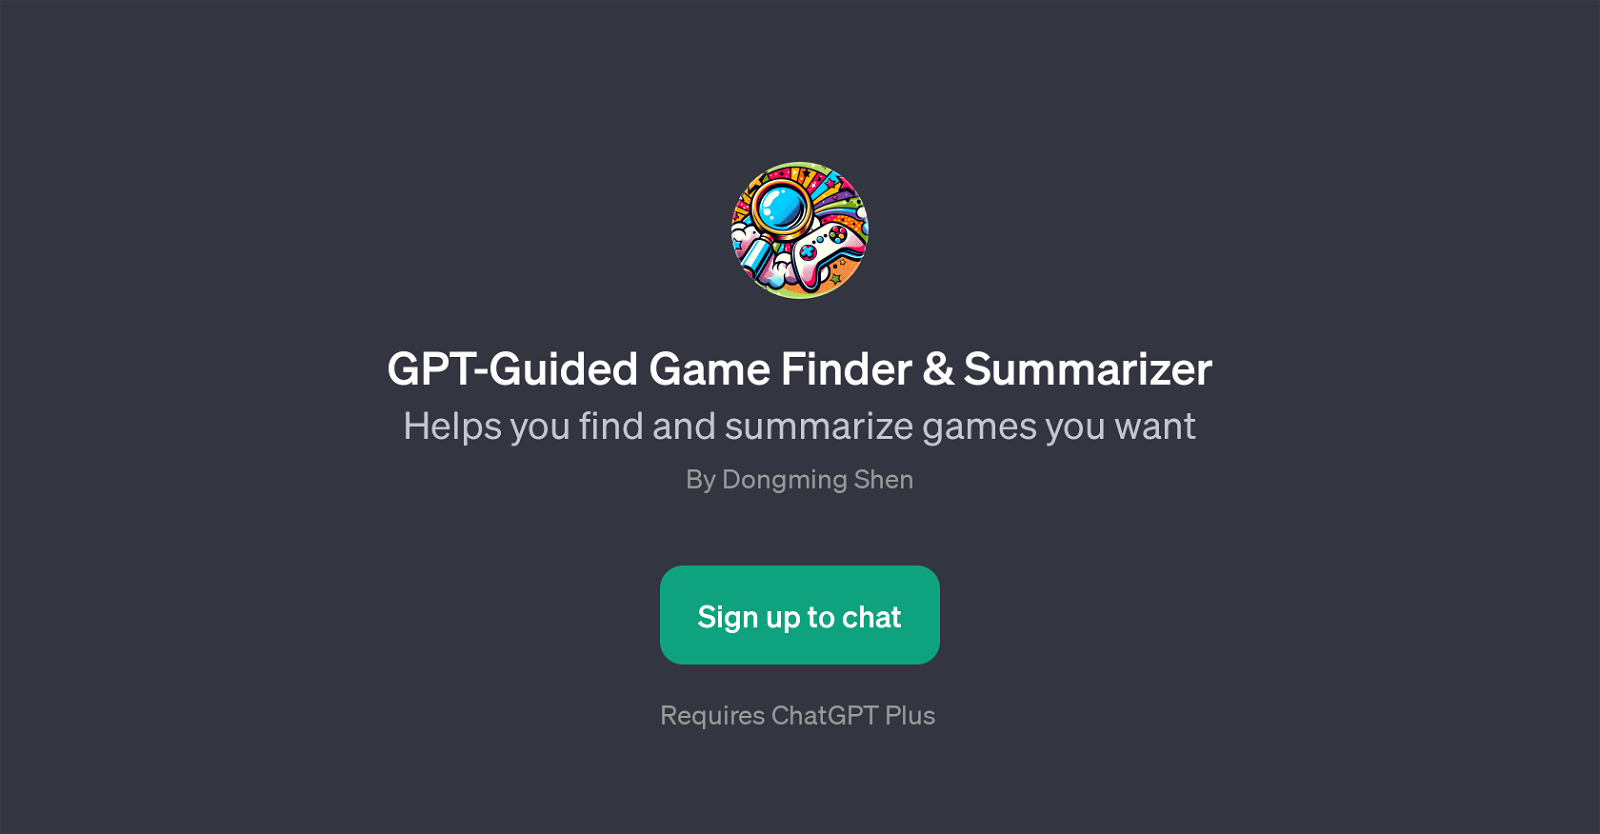 GPT-Guided Game Finder & Summarizer website